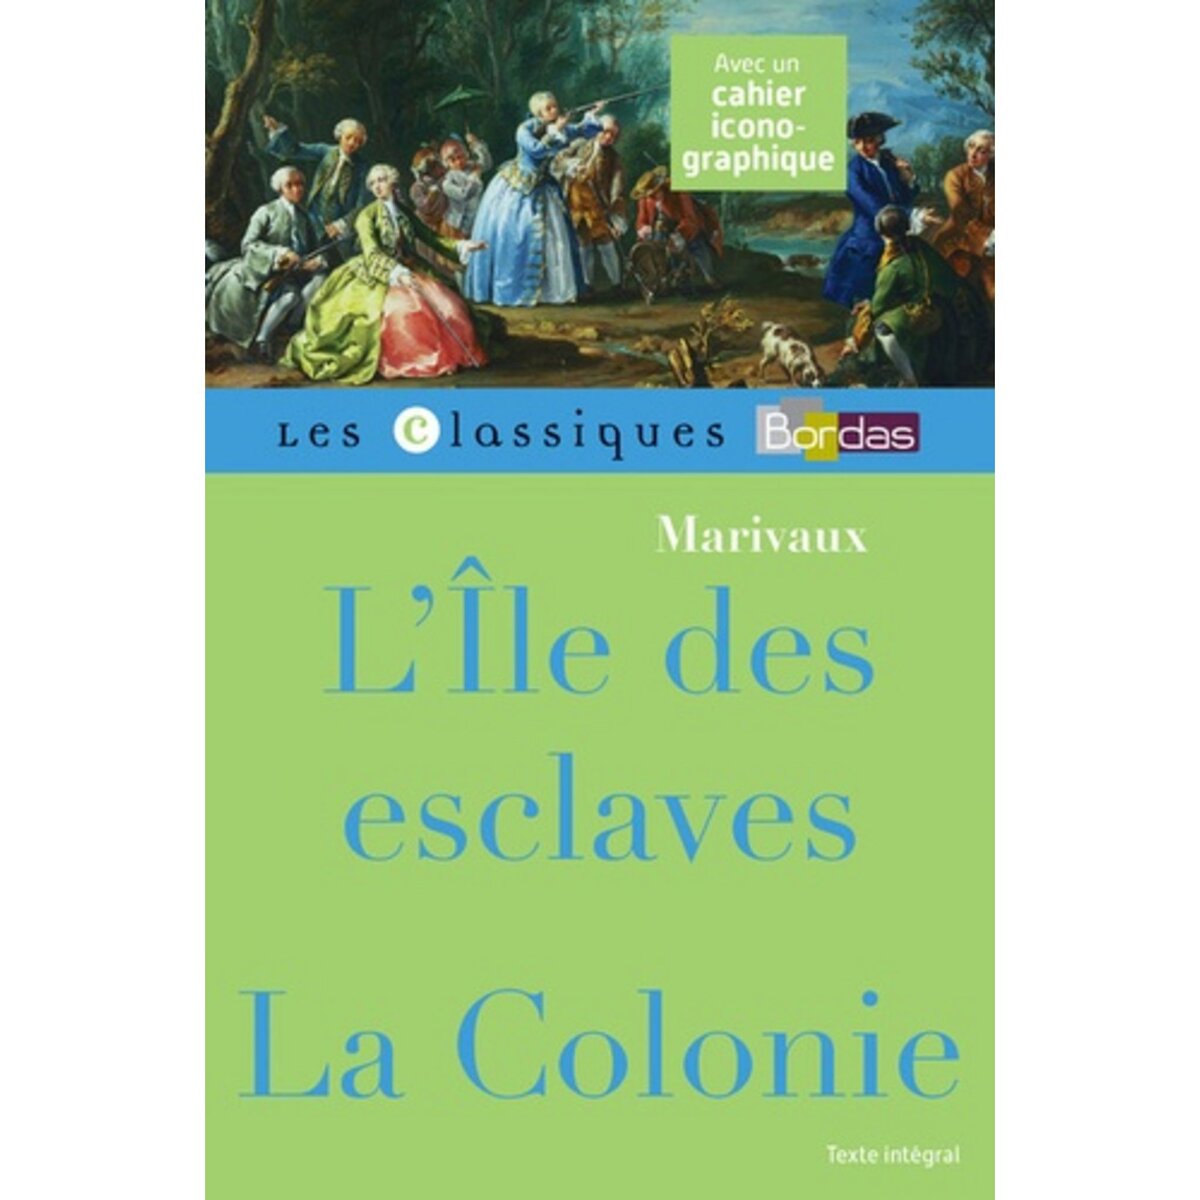  L'ILE DES ESCLAVES ; LA COLONIE, Marivaux Pierre de